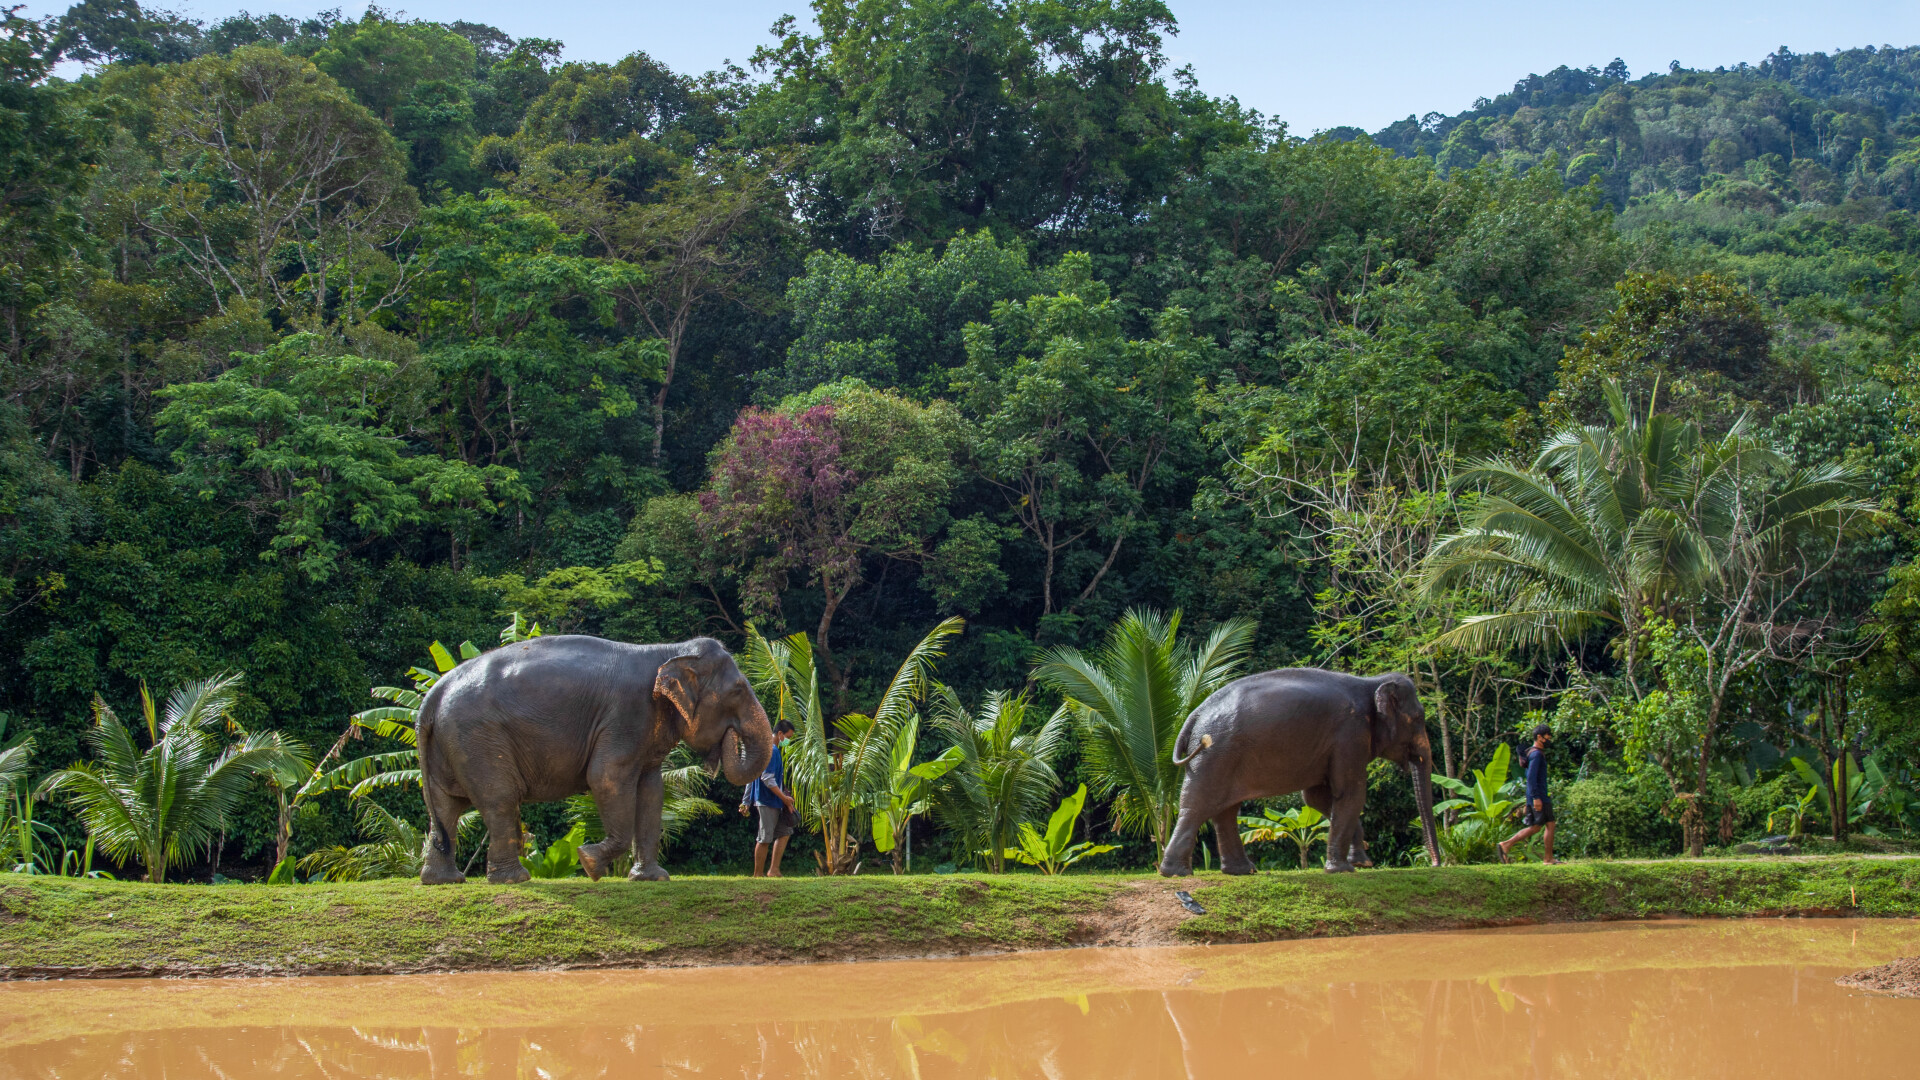 Elephant sanctuary park. Phuket Elephant Sanctuary. Green Elephant Sanctuary Park. Green Elephant Sanctuary Phuket. Thailand Green Elephant Sanctuary Park.